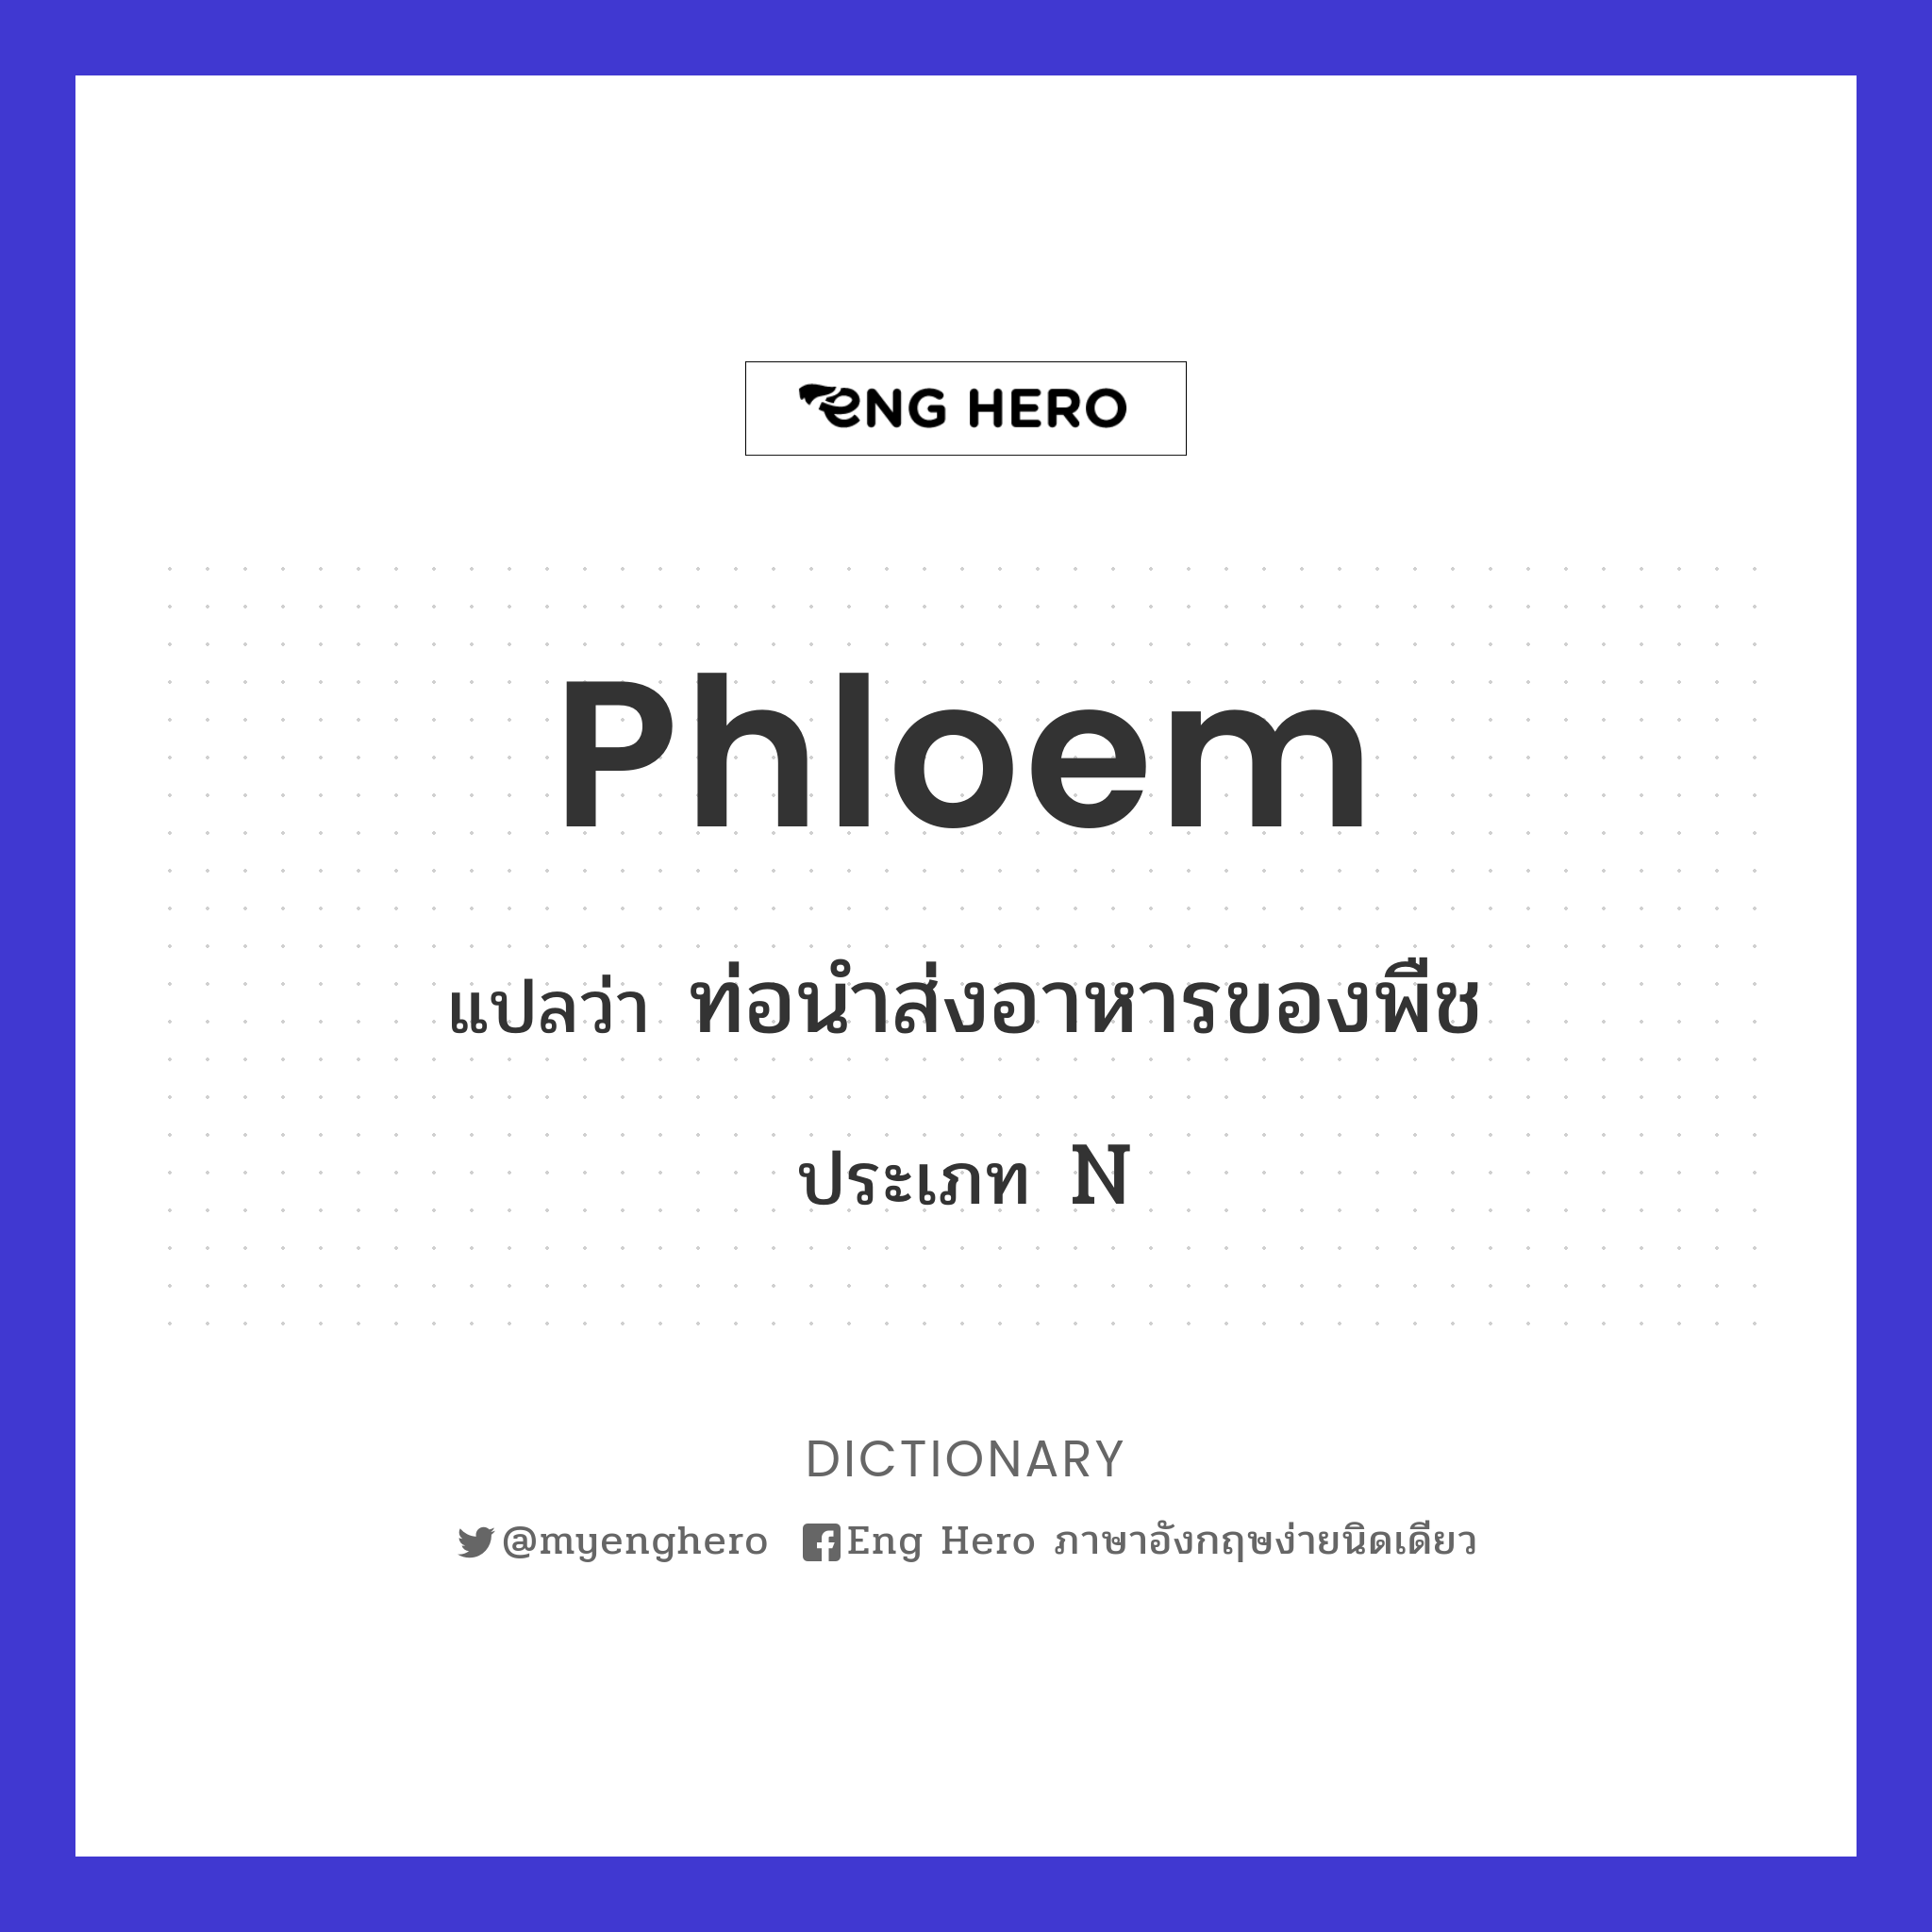 phloem